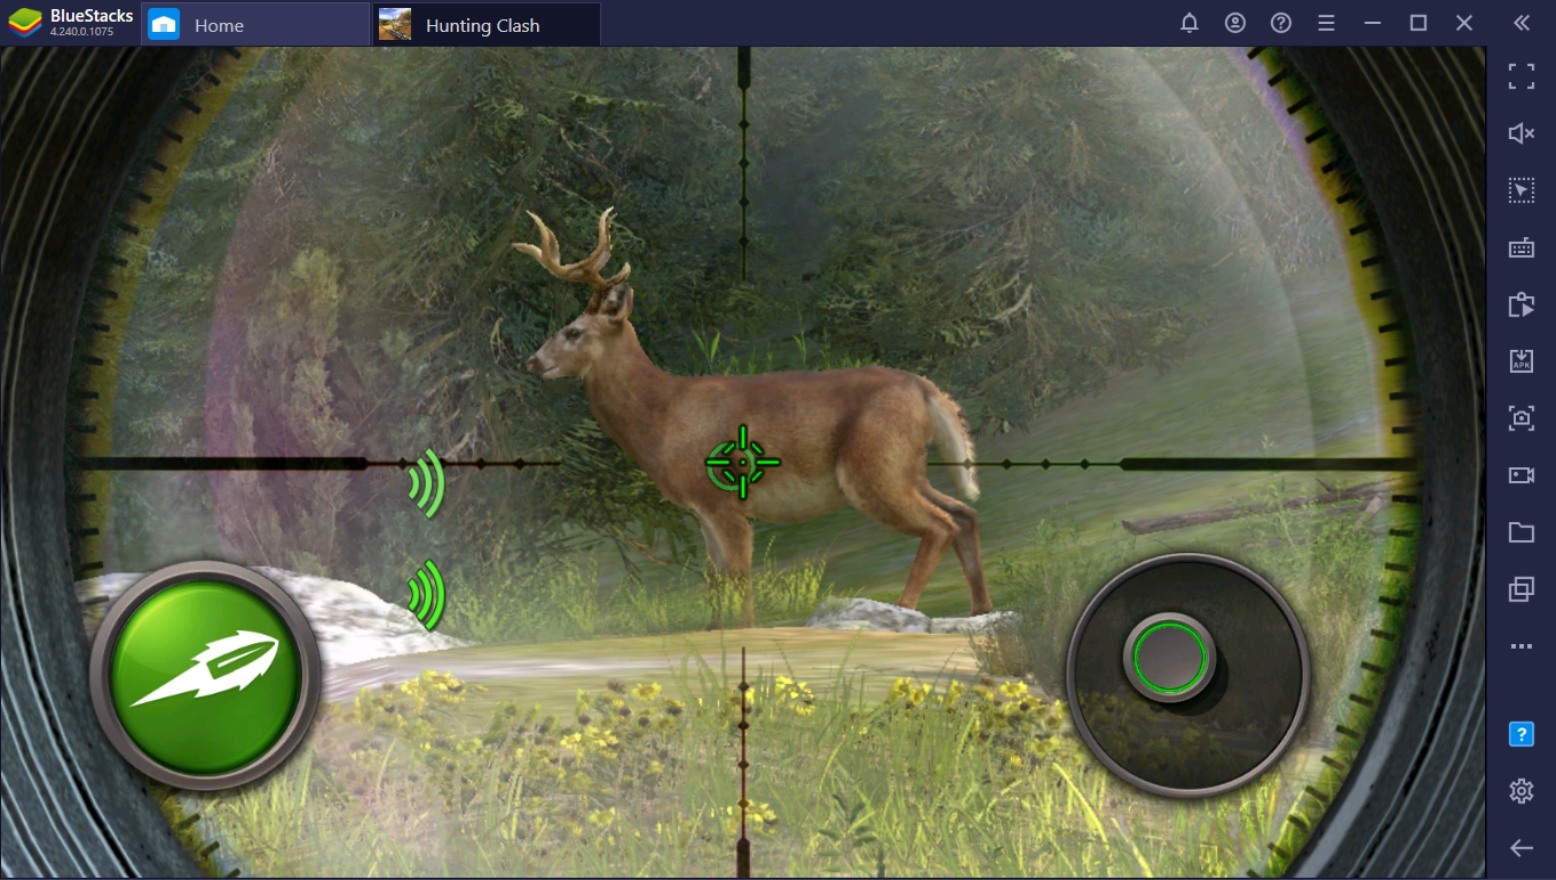 Hunting Clash: Jagdspiel auf dem PC – Ein Anfänger-Guide